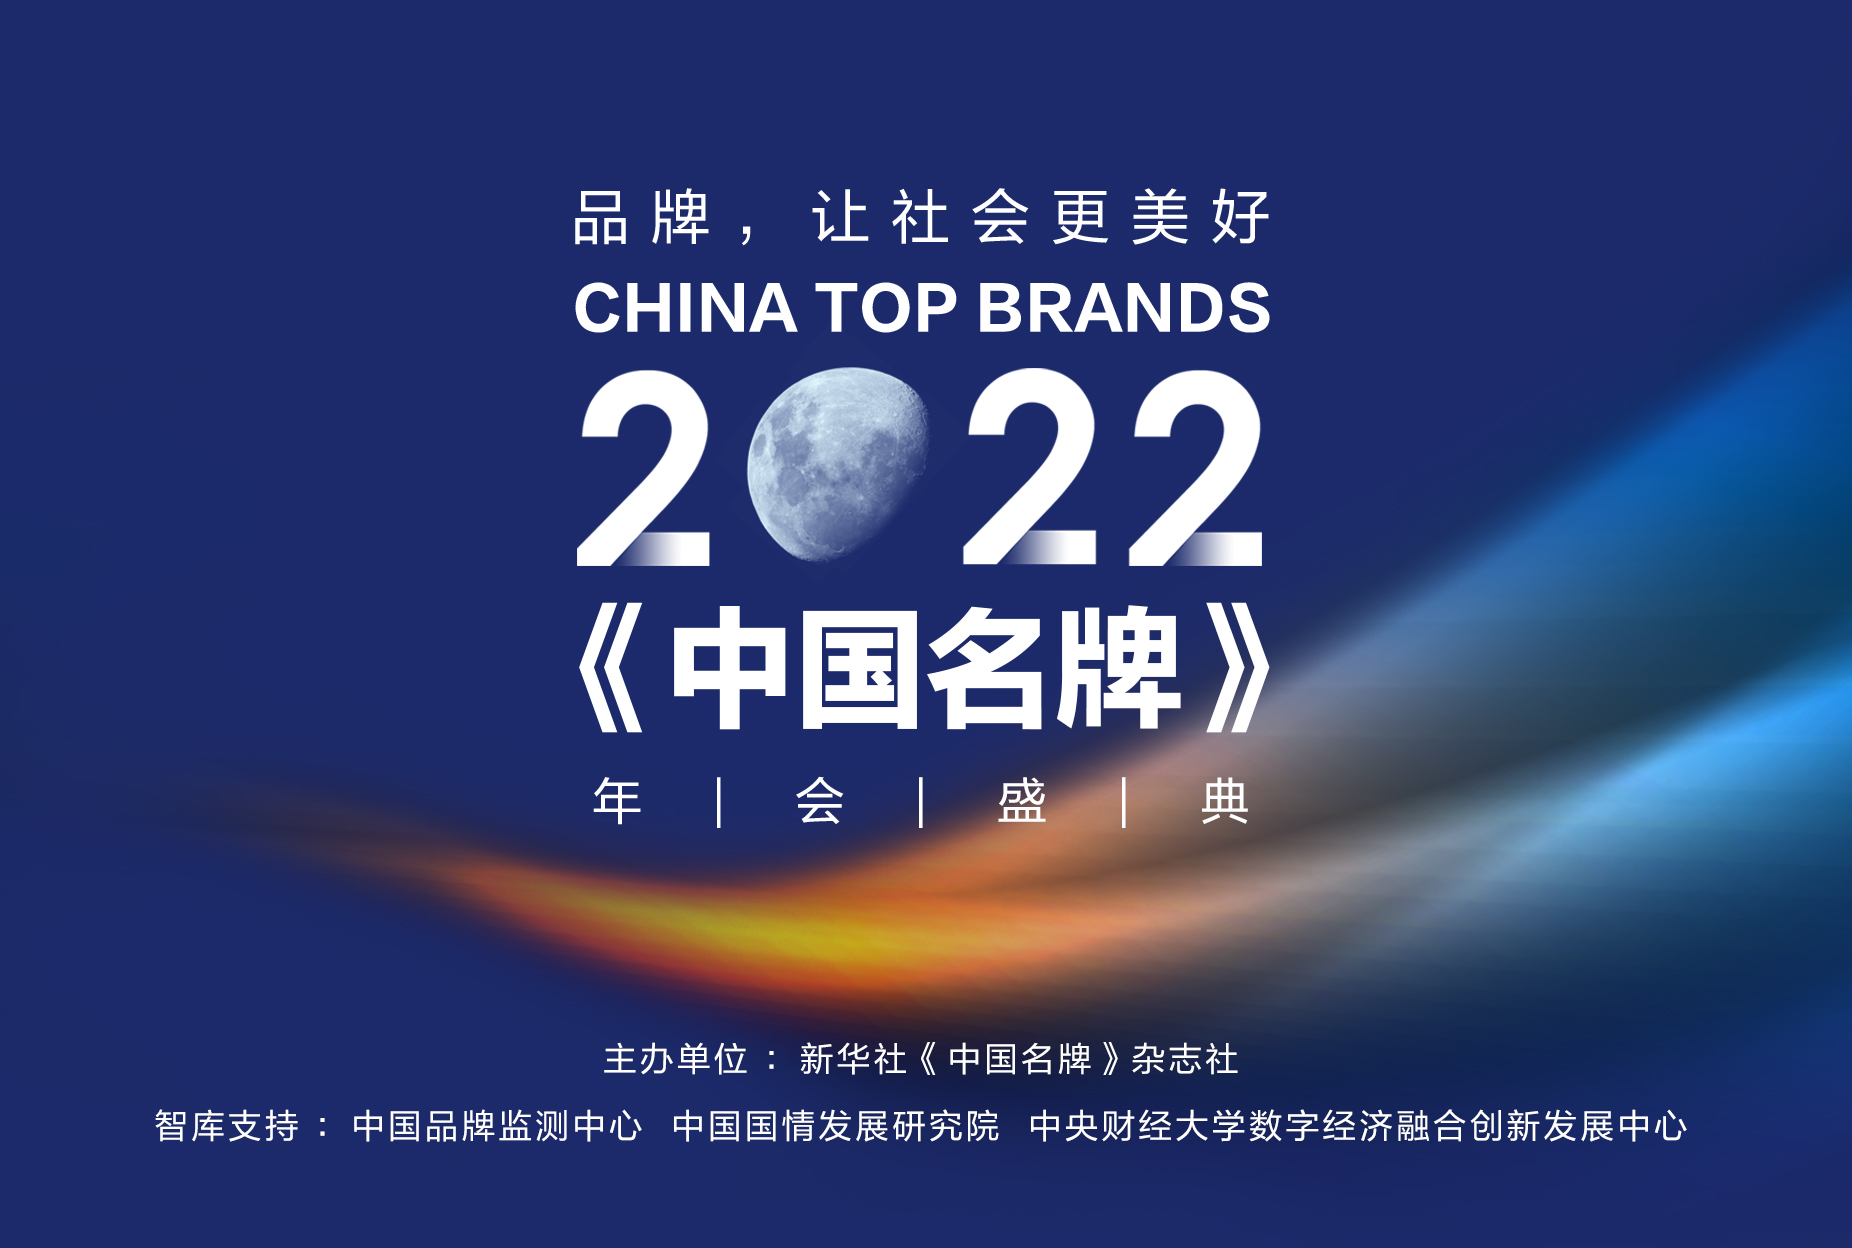 2022《中国名牌》年会将于1月10日在北京举行